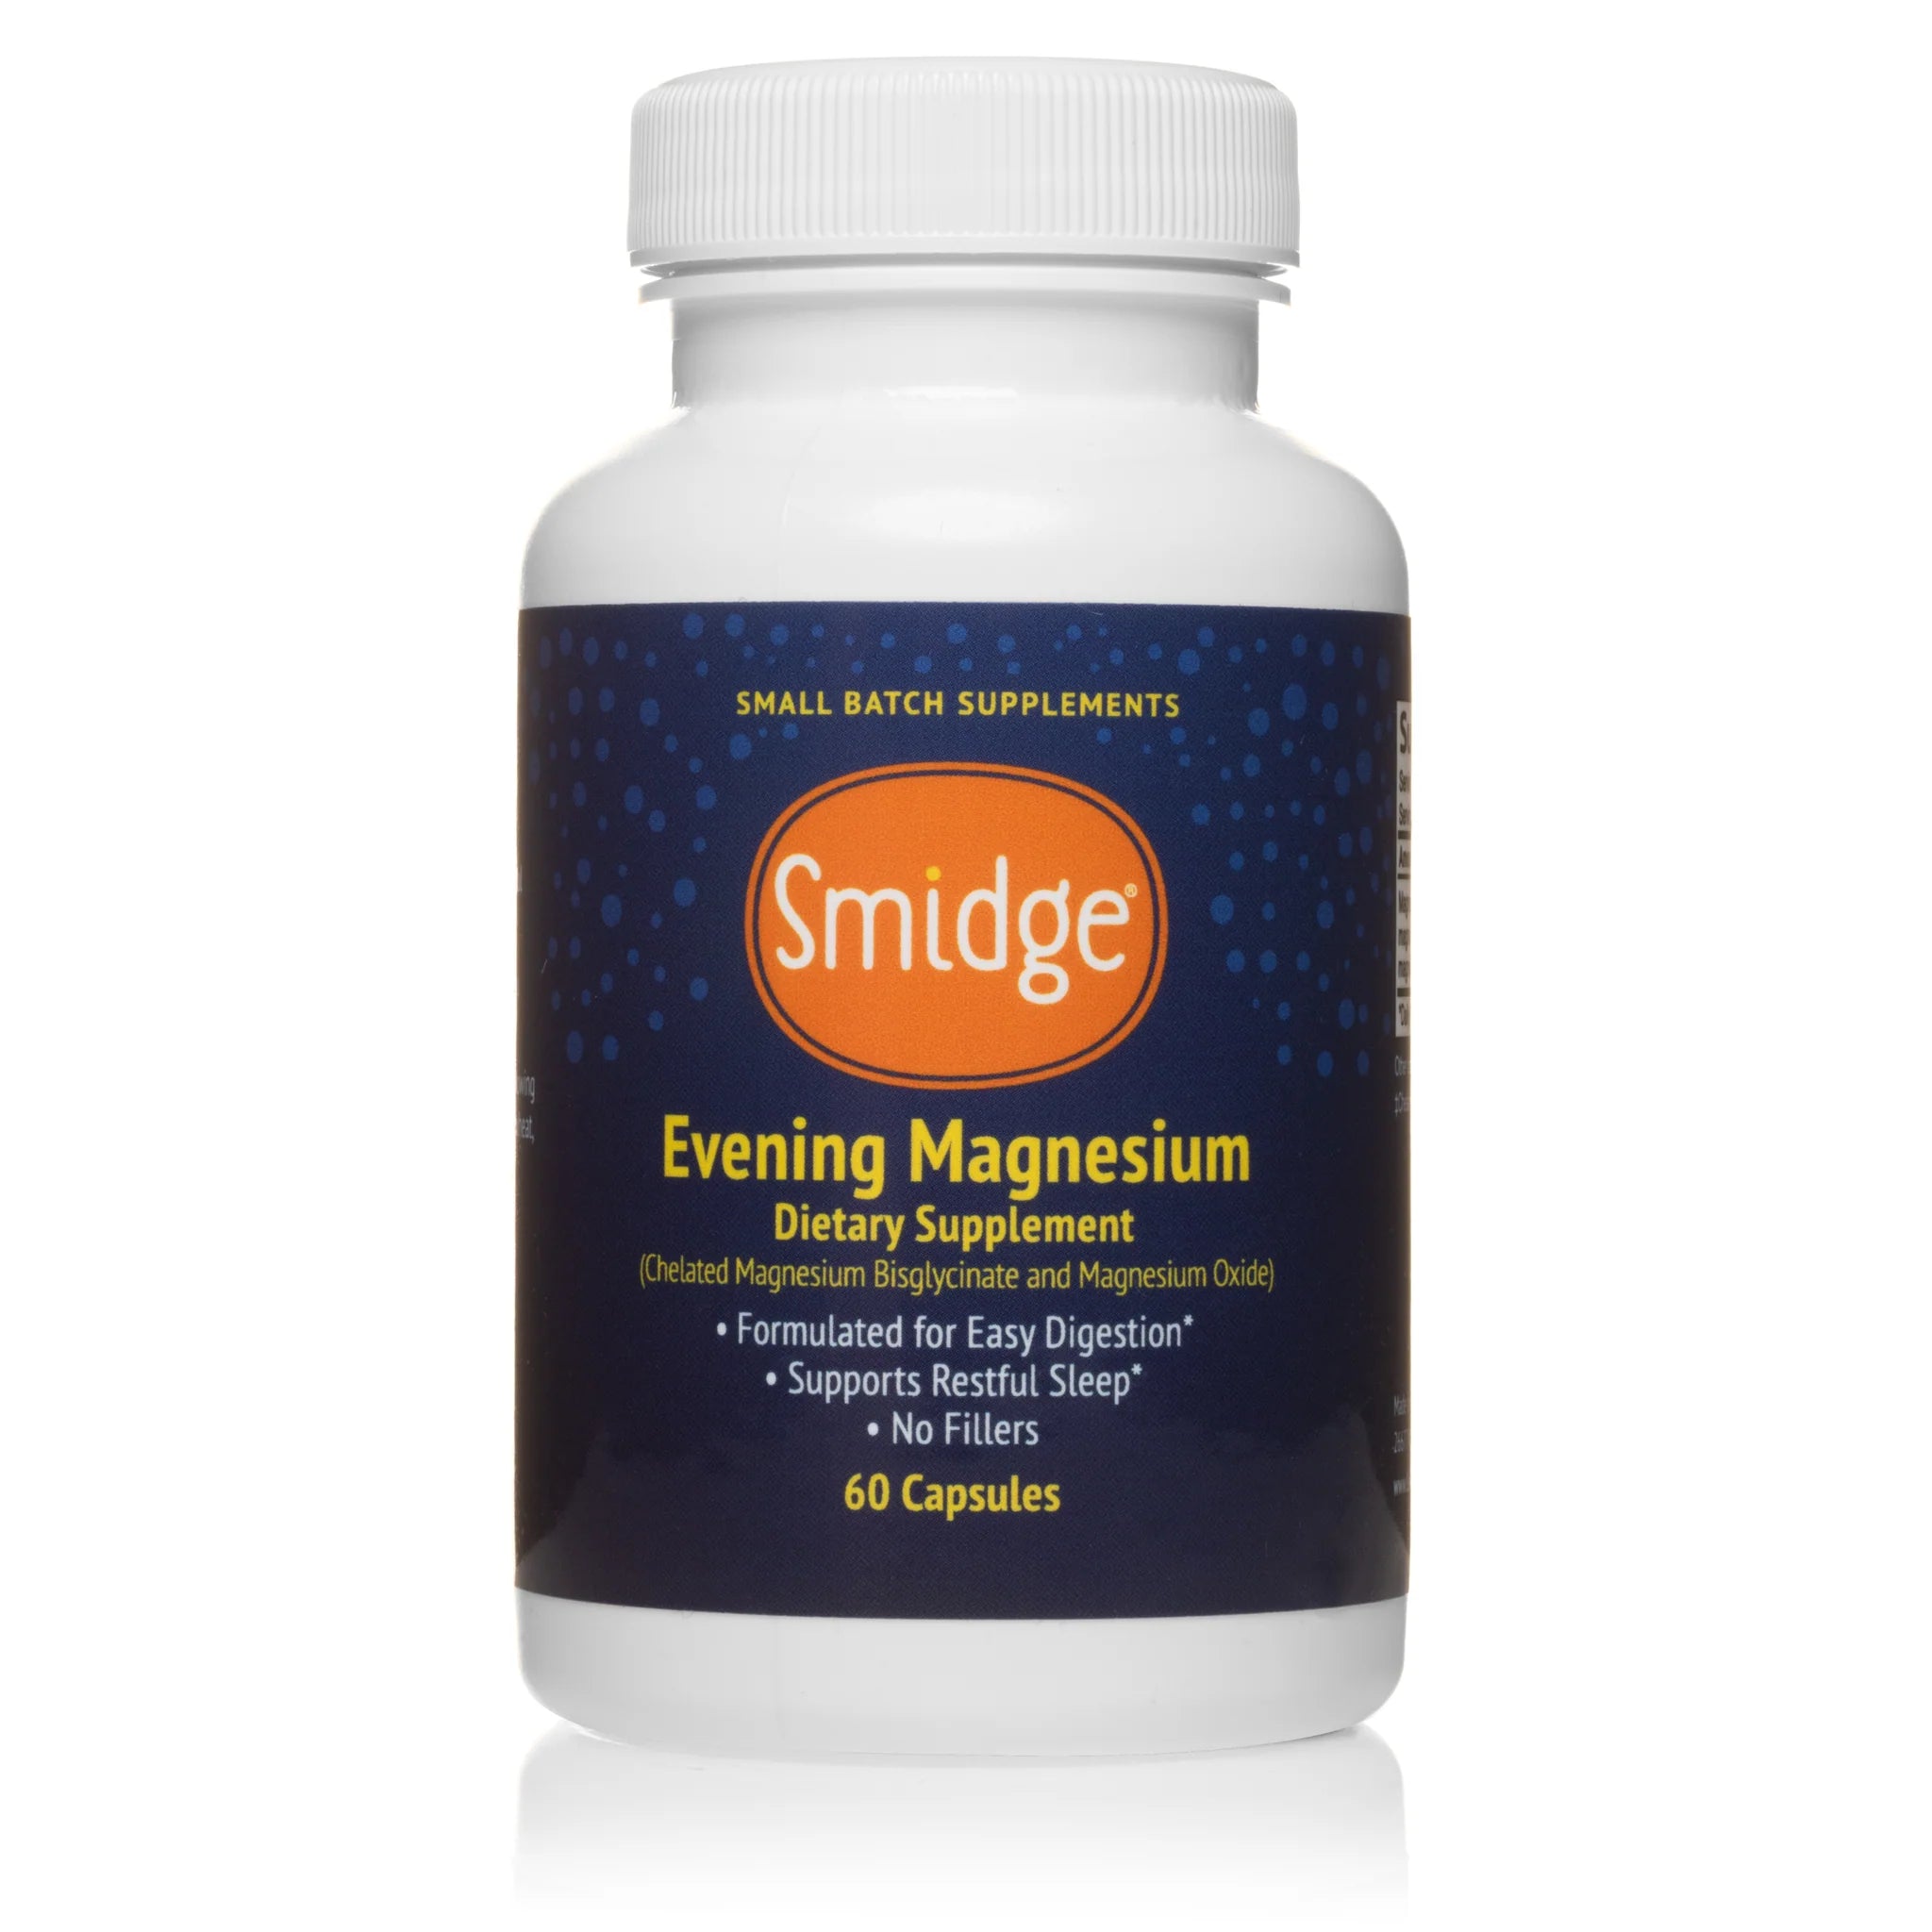 Smidge Evening Magnesium Capsules